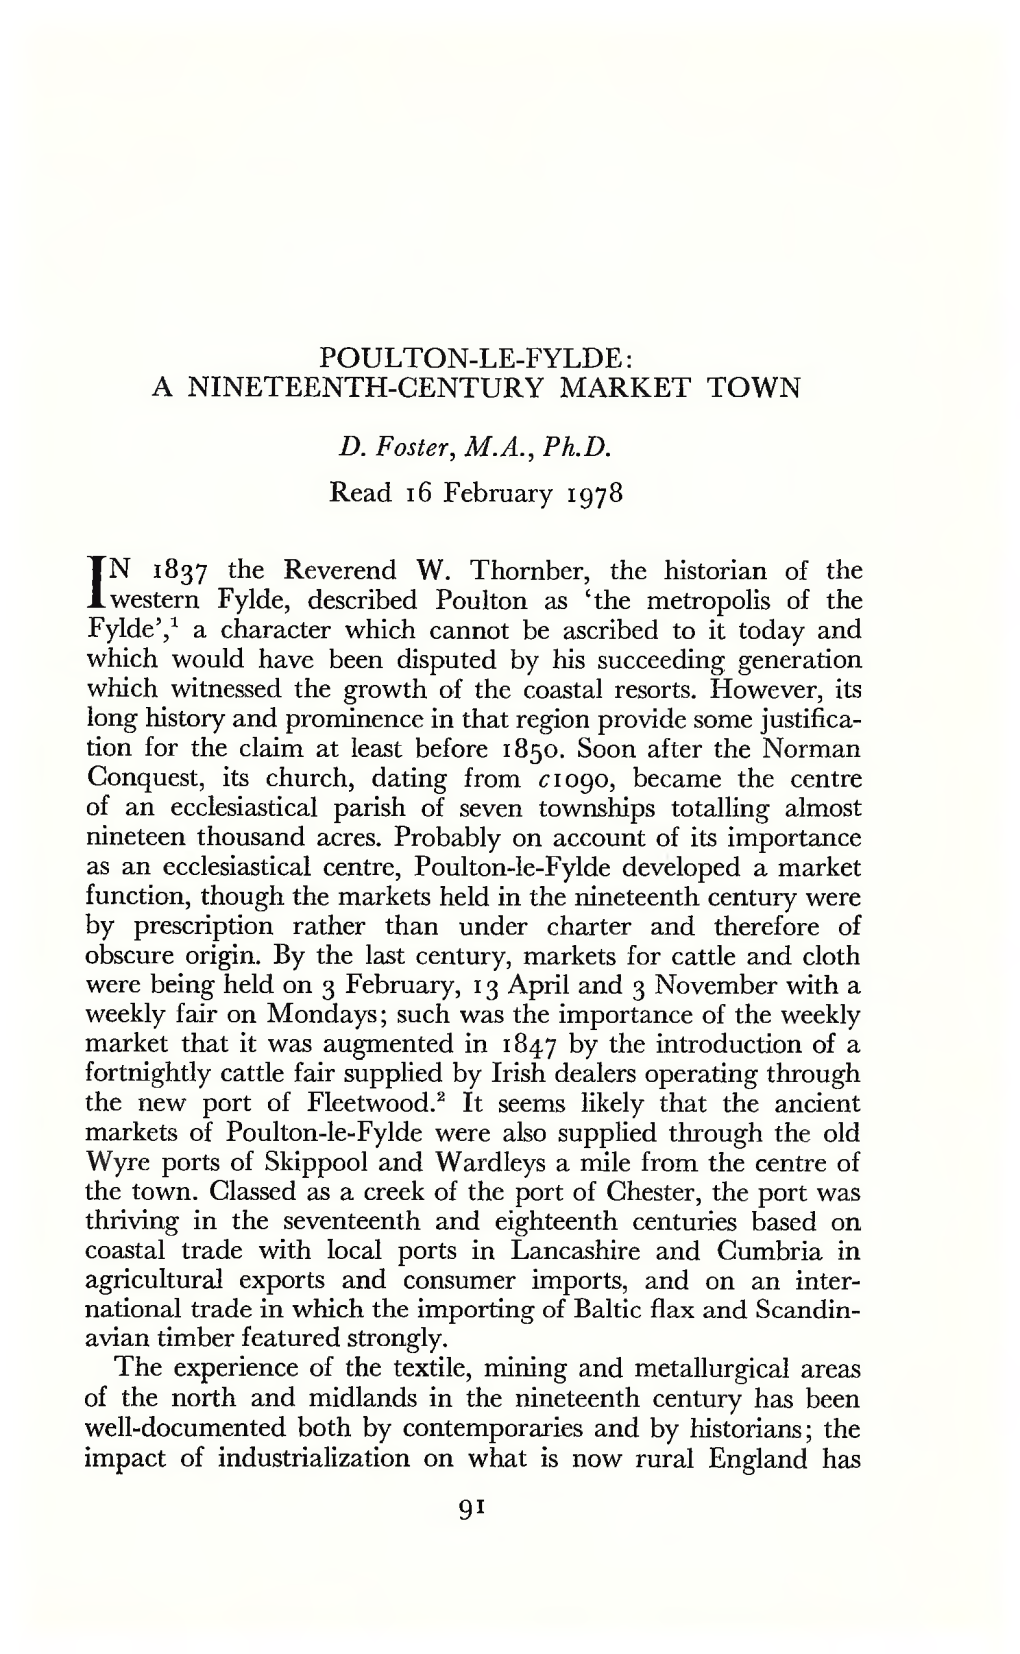 Poulton-Le-Fylde: a Nineteenth-Century Market Town